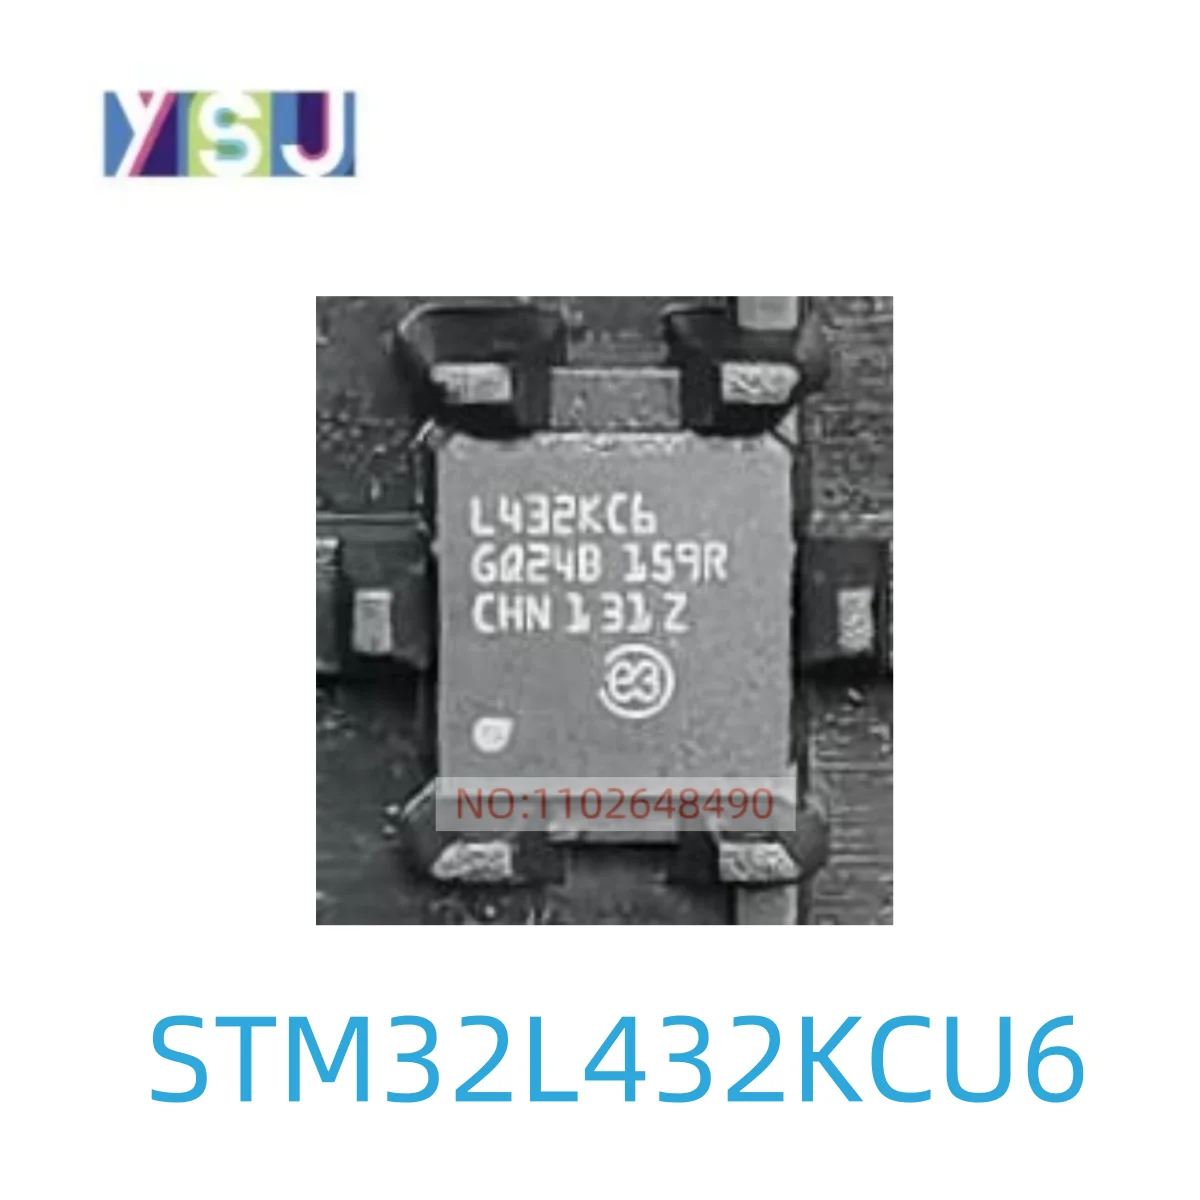 Микросхема STM32L432KCU6 Новые оригинальные спотовые товары Если вам нужна другая микросхема, пожалуйста, проконсультируйтесь